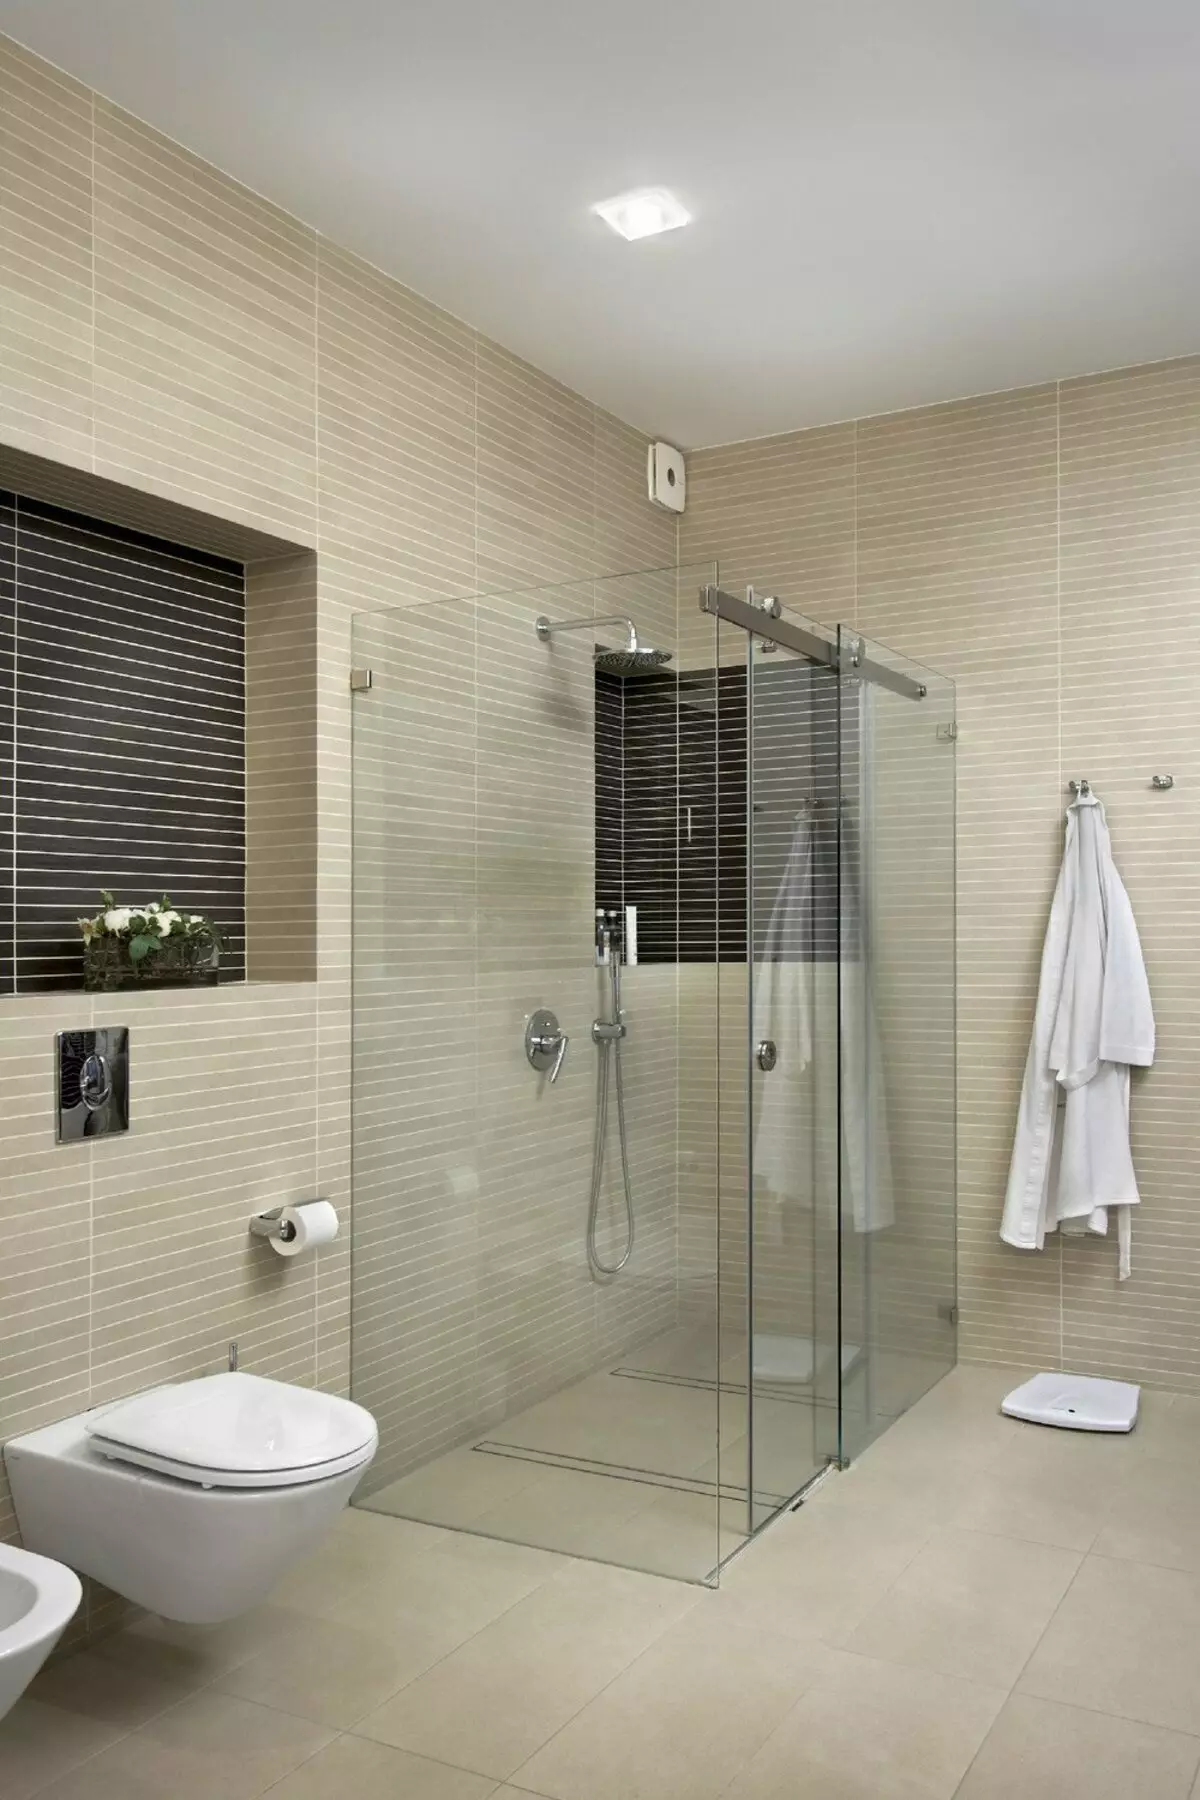 キャビンなしのバスルームのシャワー（86写真）：パレットとタイルキャビン、プロジェクトなしのシャワー付きバスルームデザインオプション 21384_20